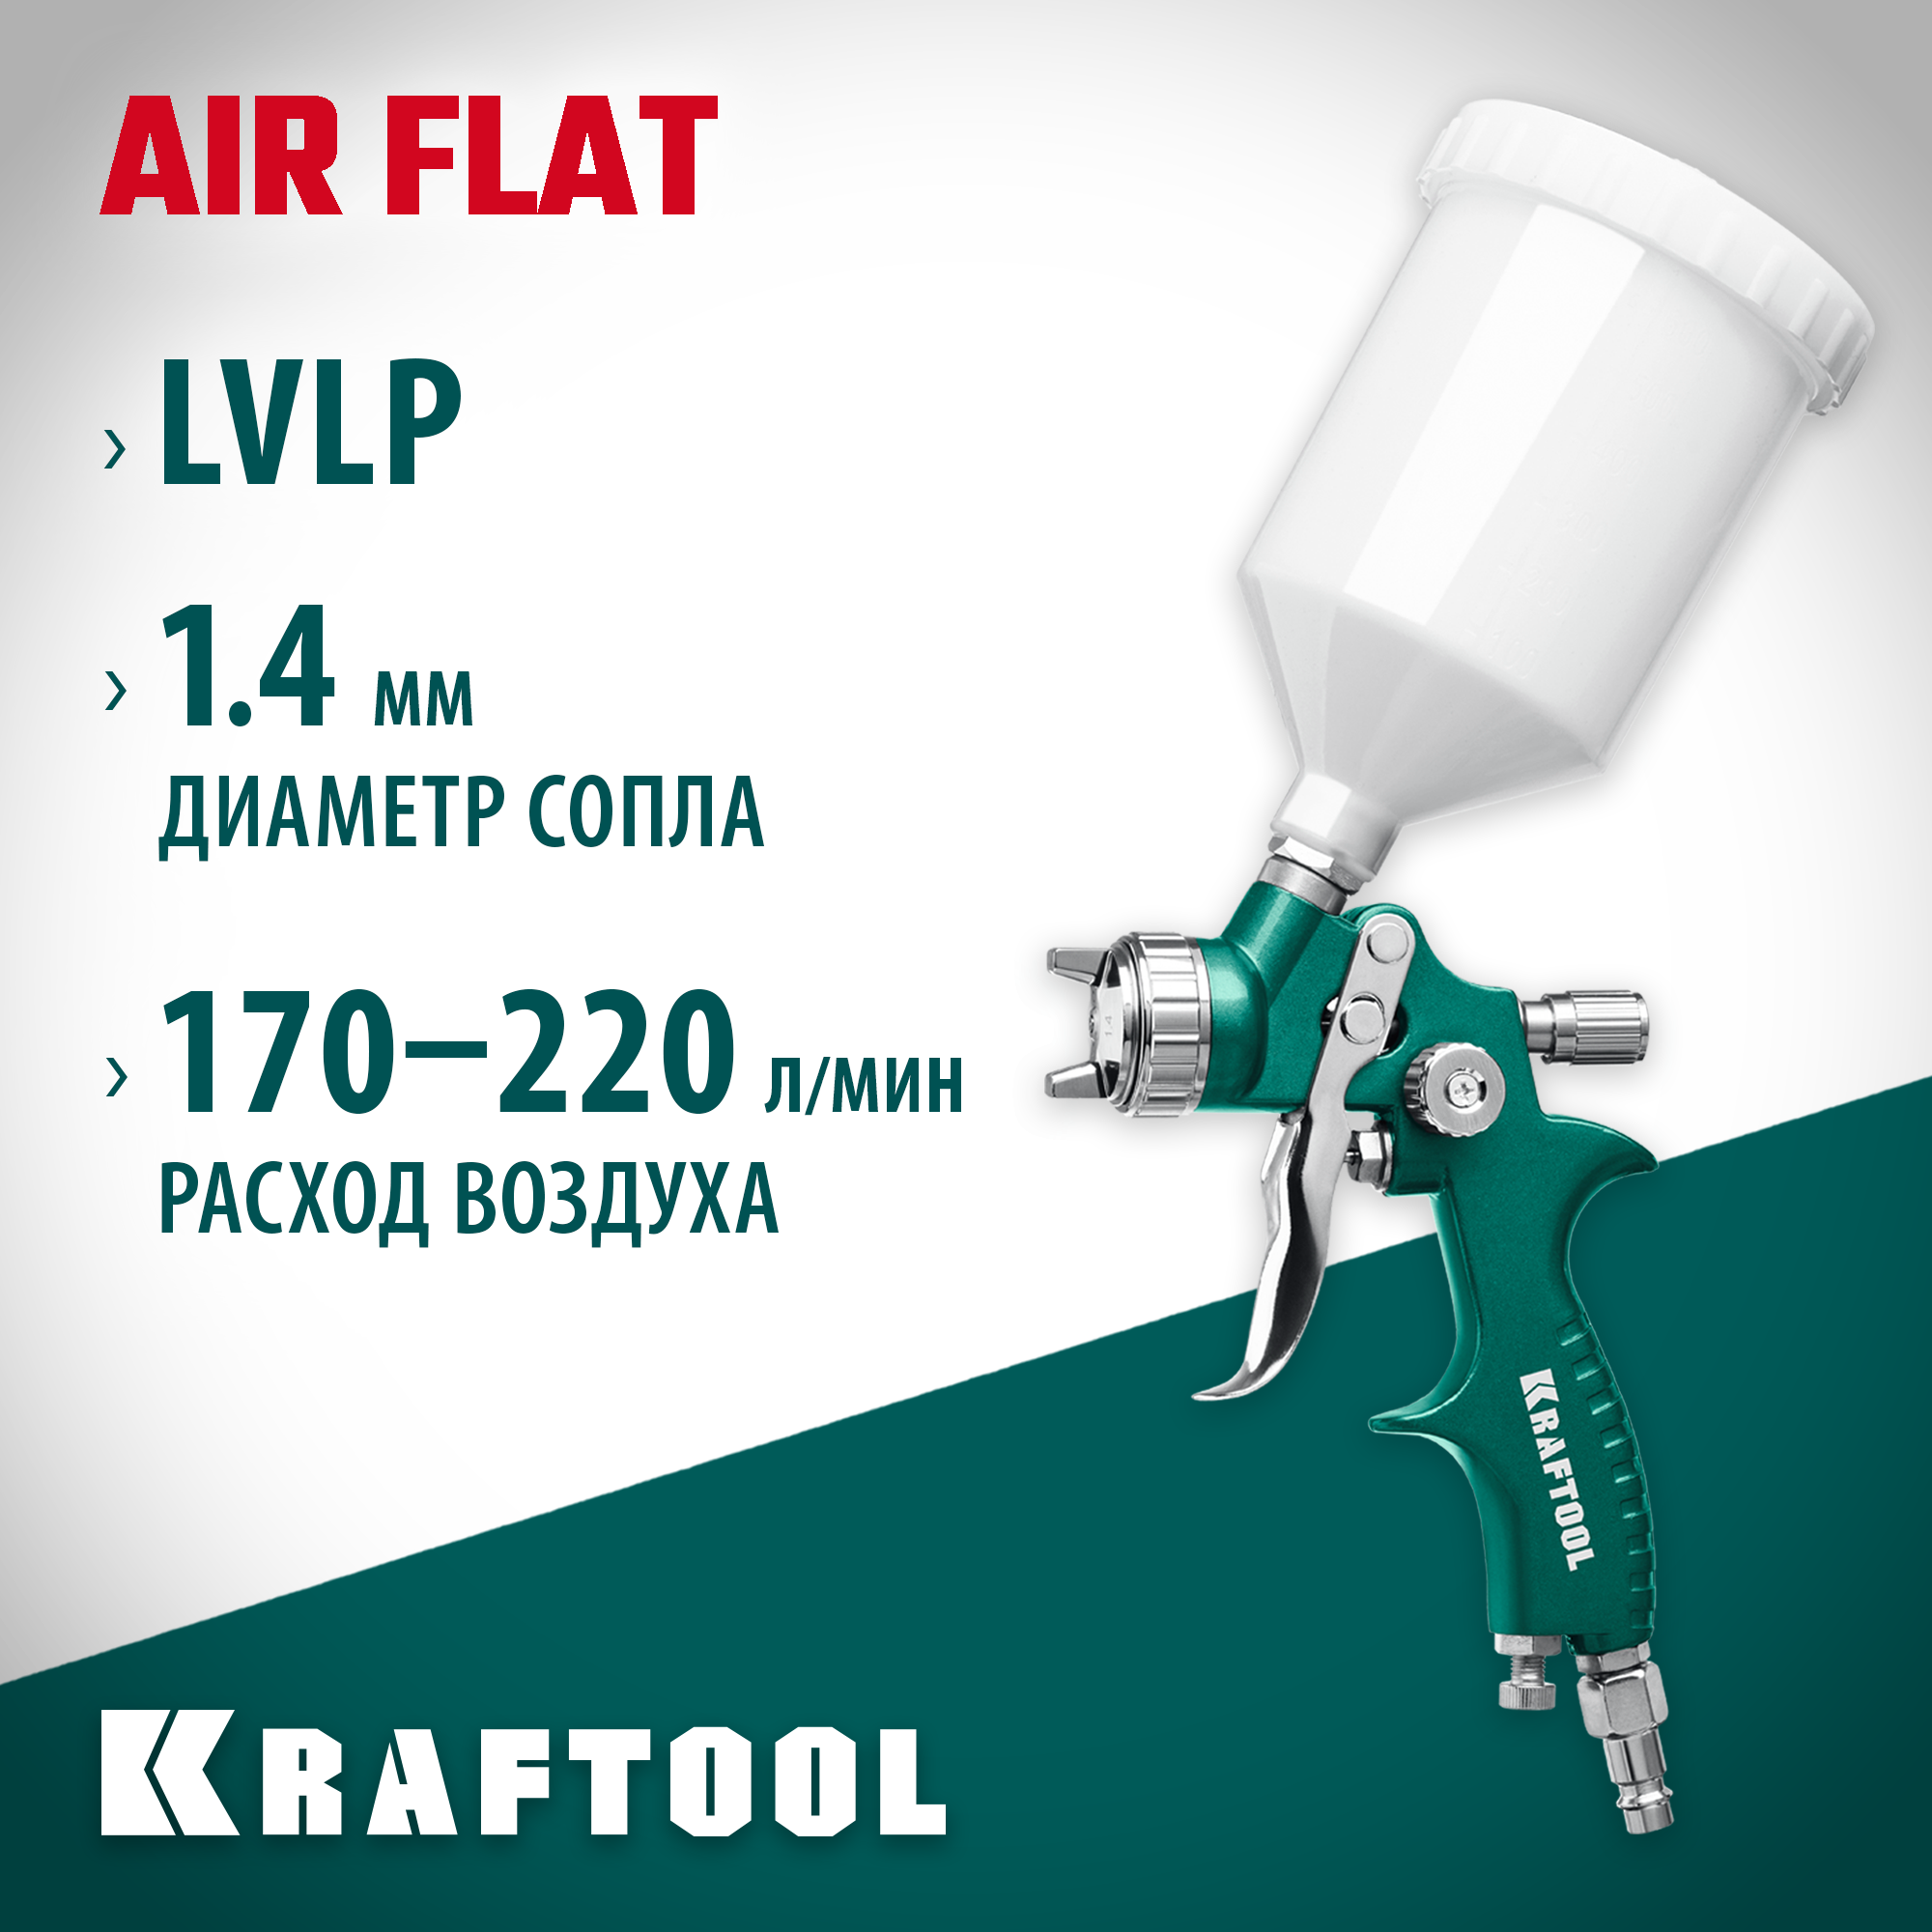 KRAFTOOL сопло 14 мм краскопульт пневматический c верхним бачком AirFlat LVLP 06524-1.4